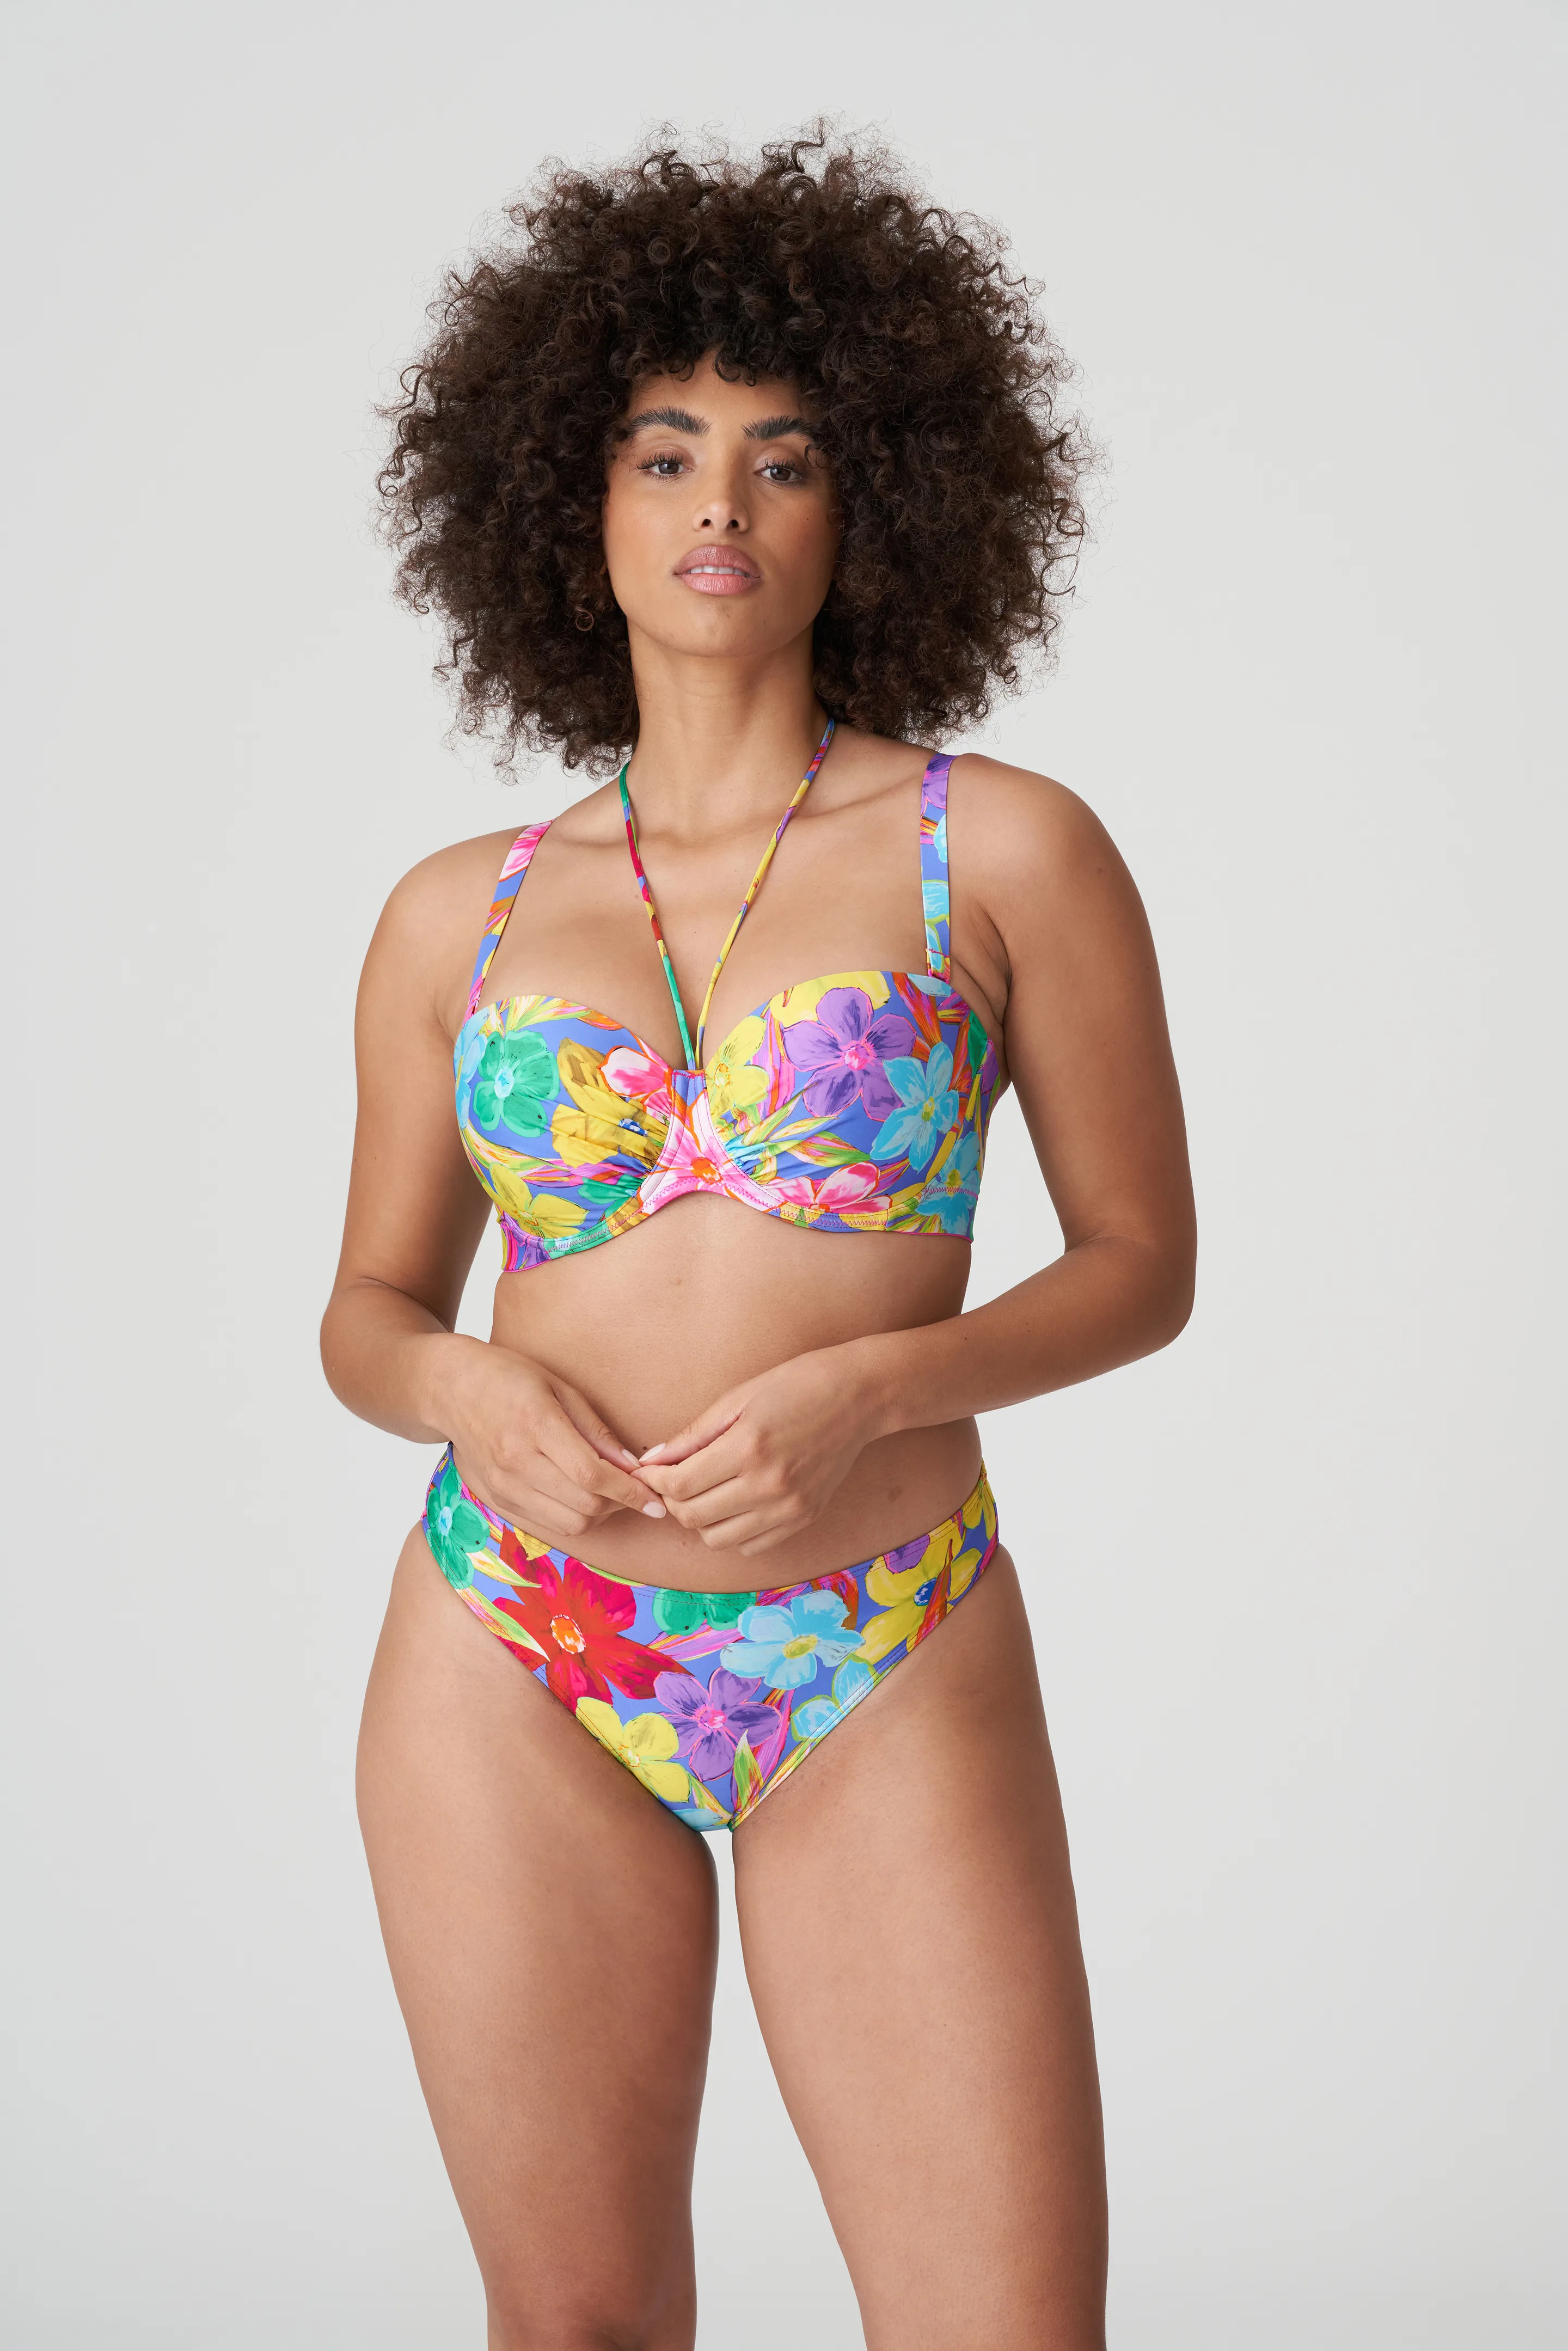 Fuller bust size - Swimwear and beachwear - Women